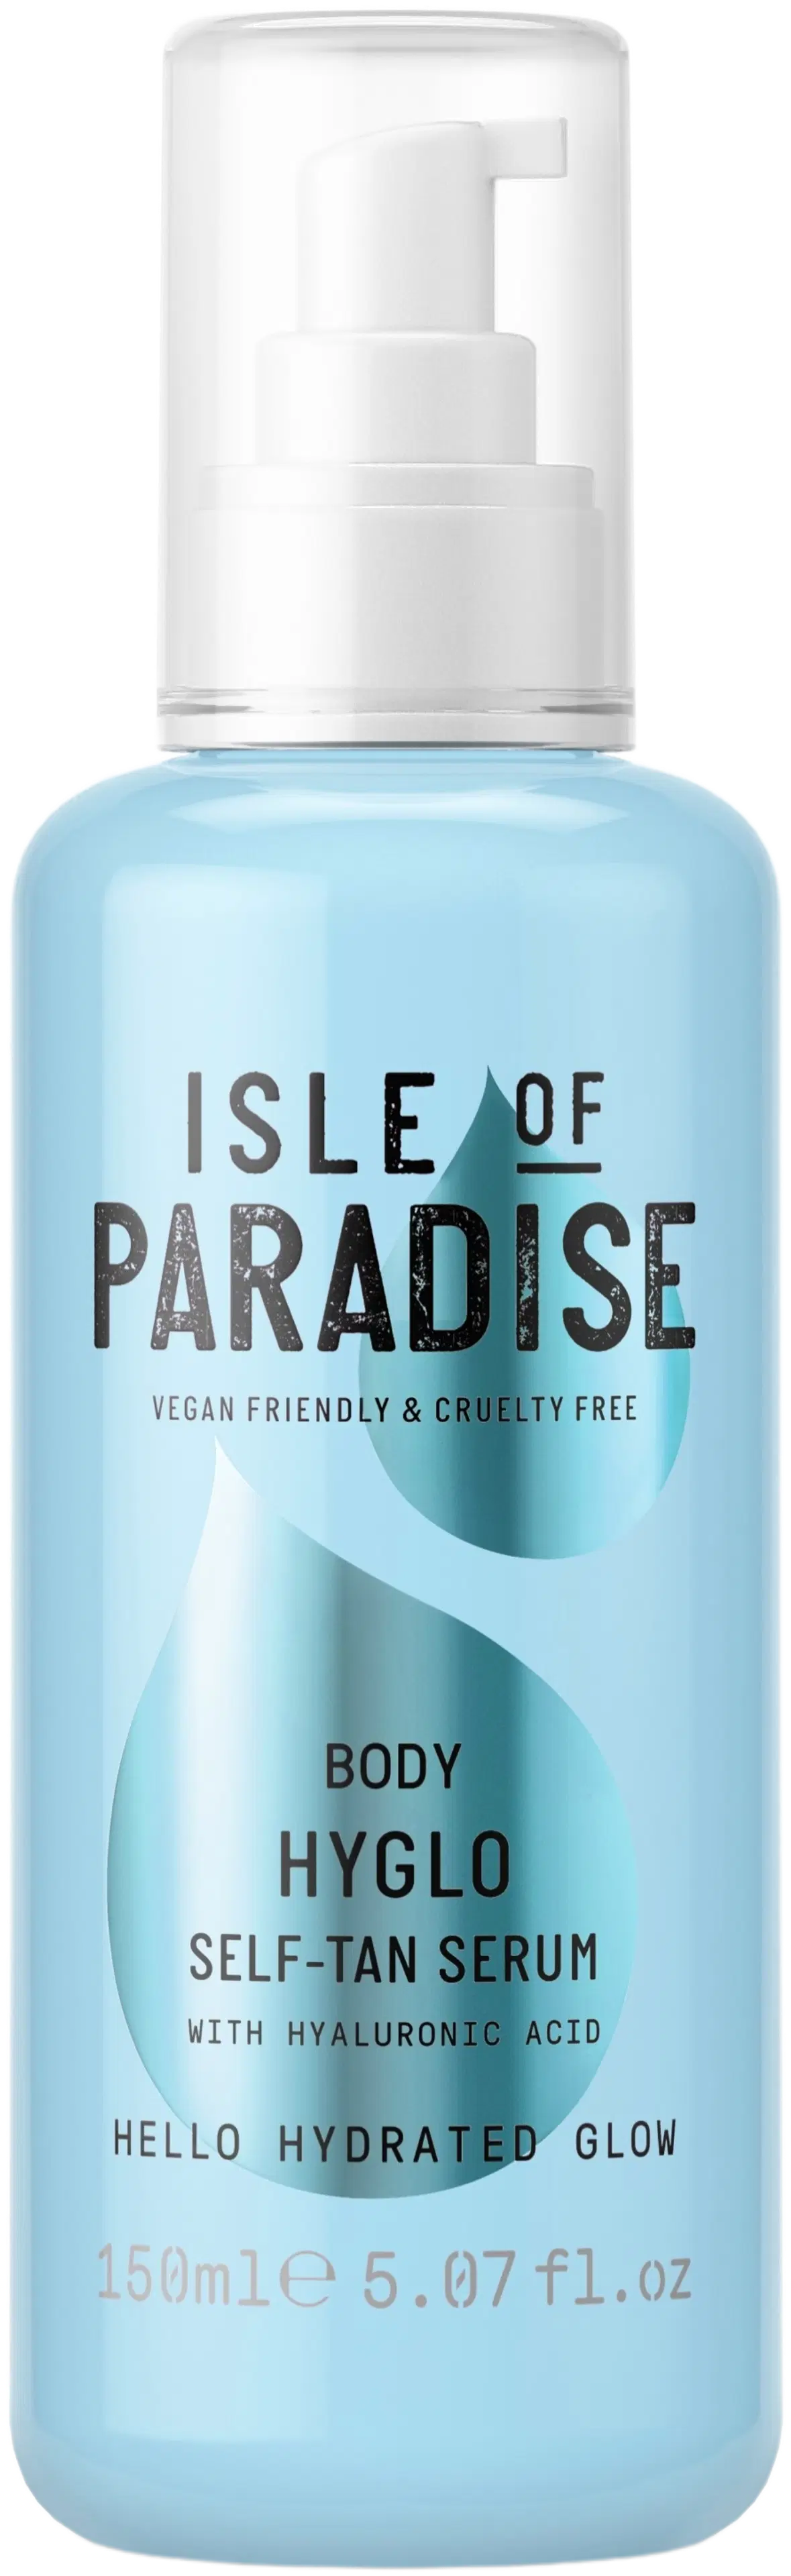 Isle of Paradise Hyglo Body Self-Tan Serum 150ml -asteittain päivettävä seerumi vartalolle